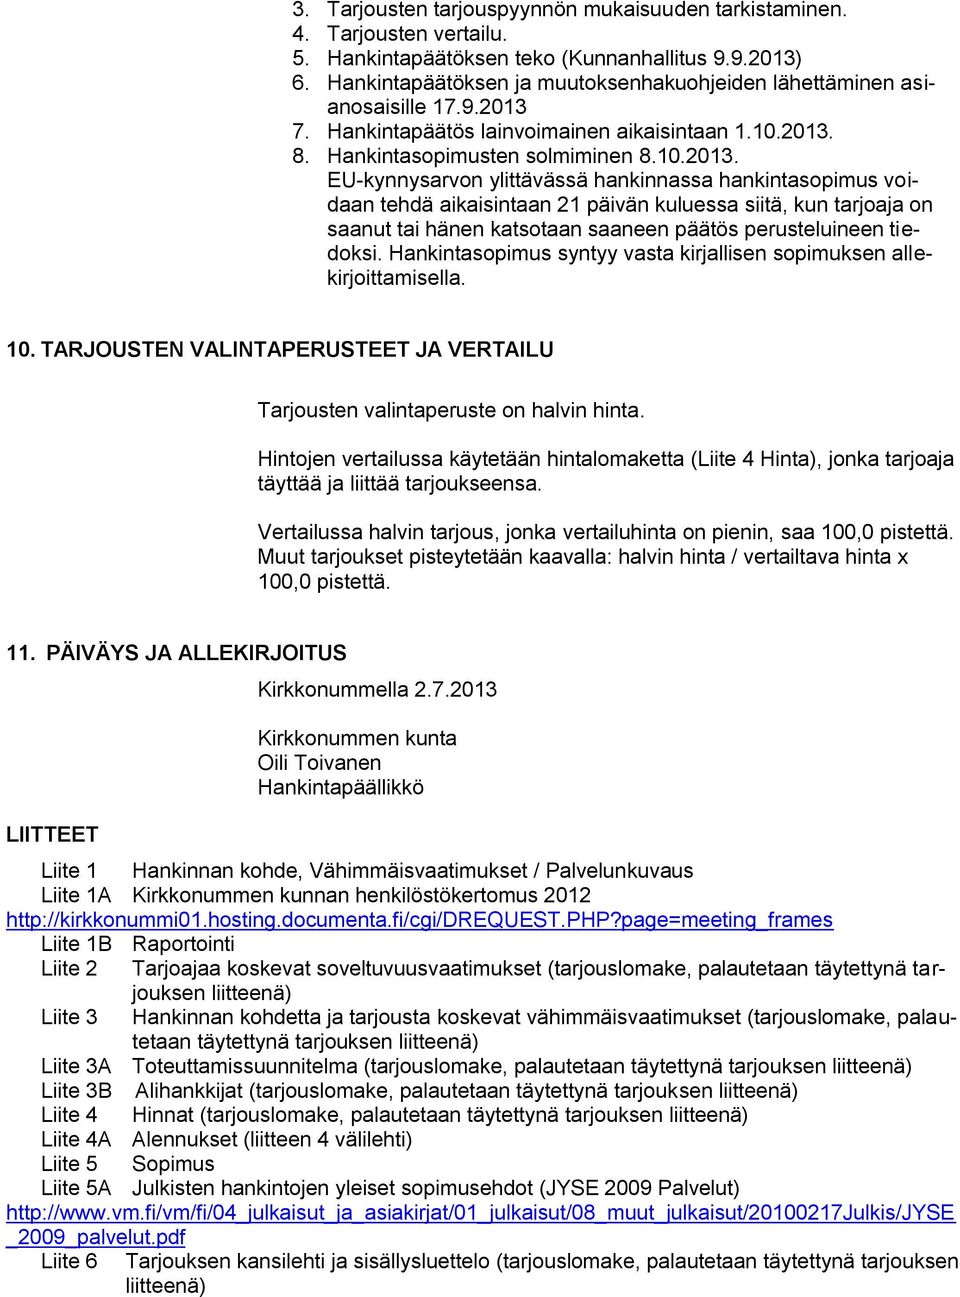 7. Hankintapäätös lainvoimainen aikaisintaan 1.10.2013.